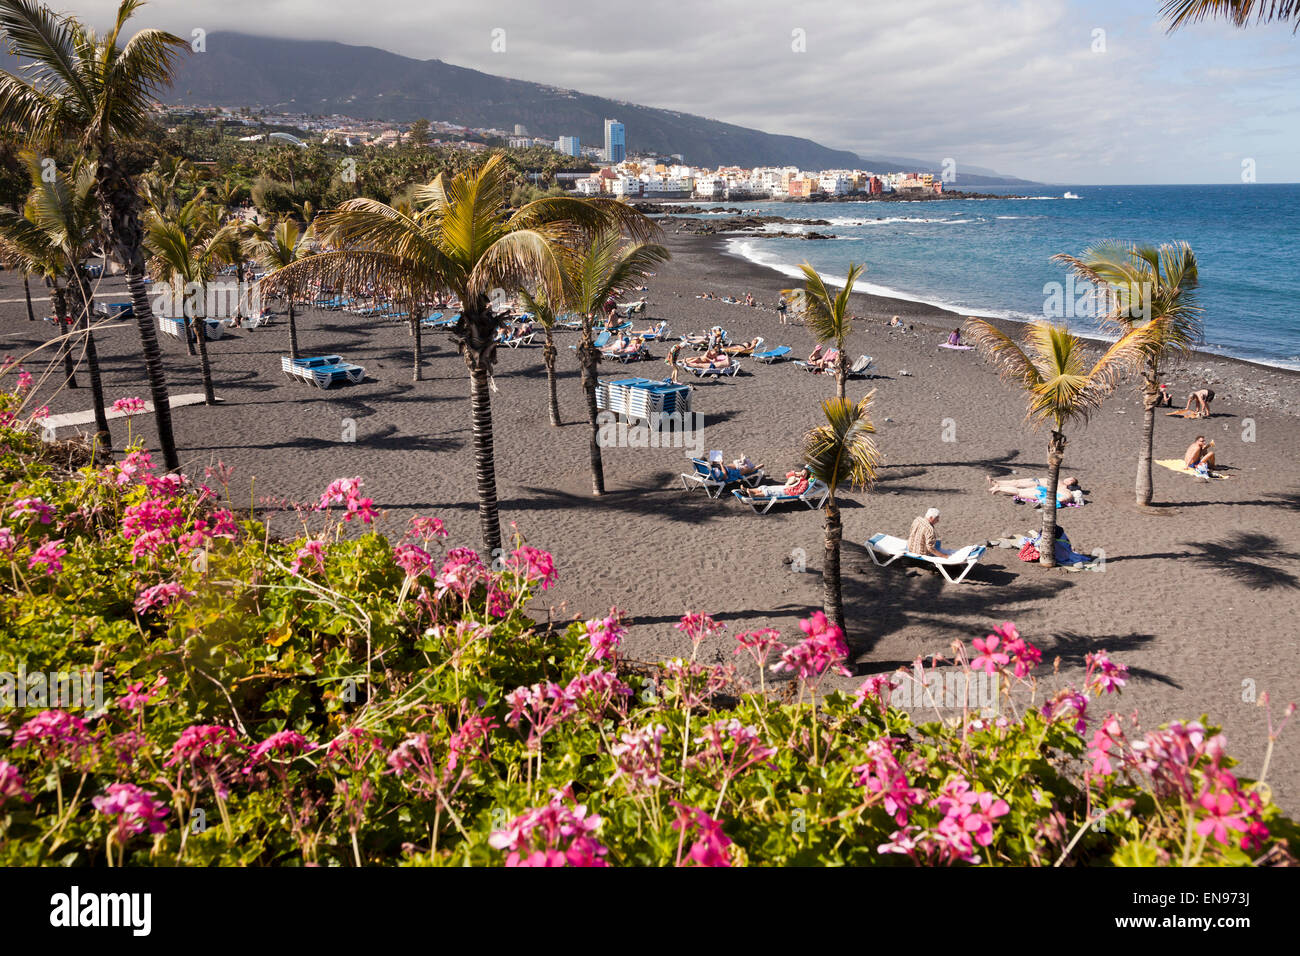 La plage Jardín noir, Puerto de la Cruz, Tenerife, Canaries, Espagne, Europe Banque D'Images